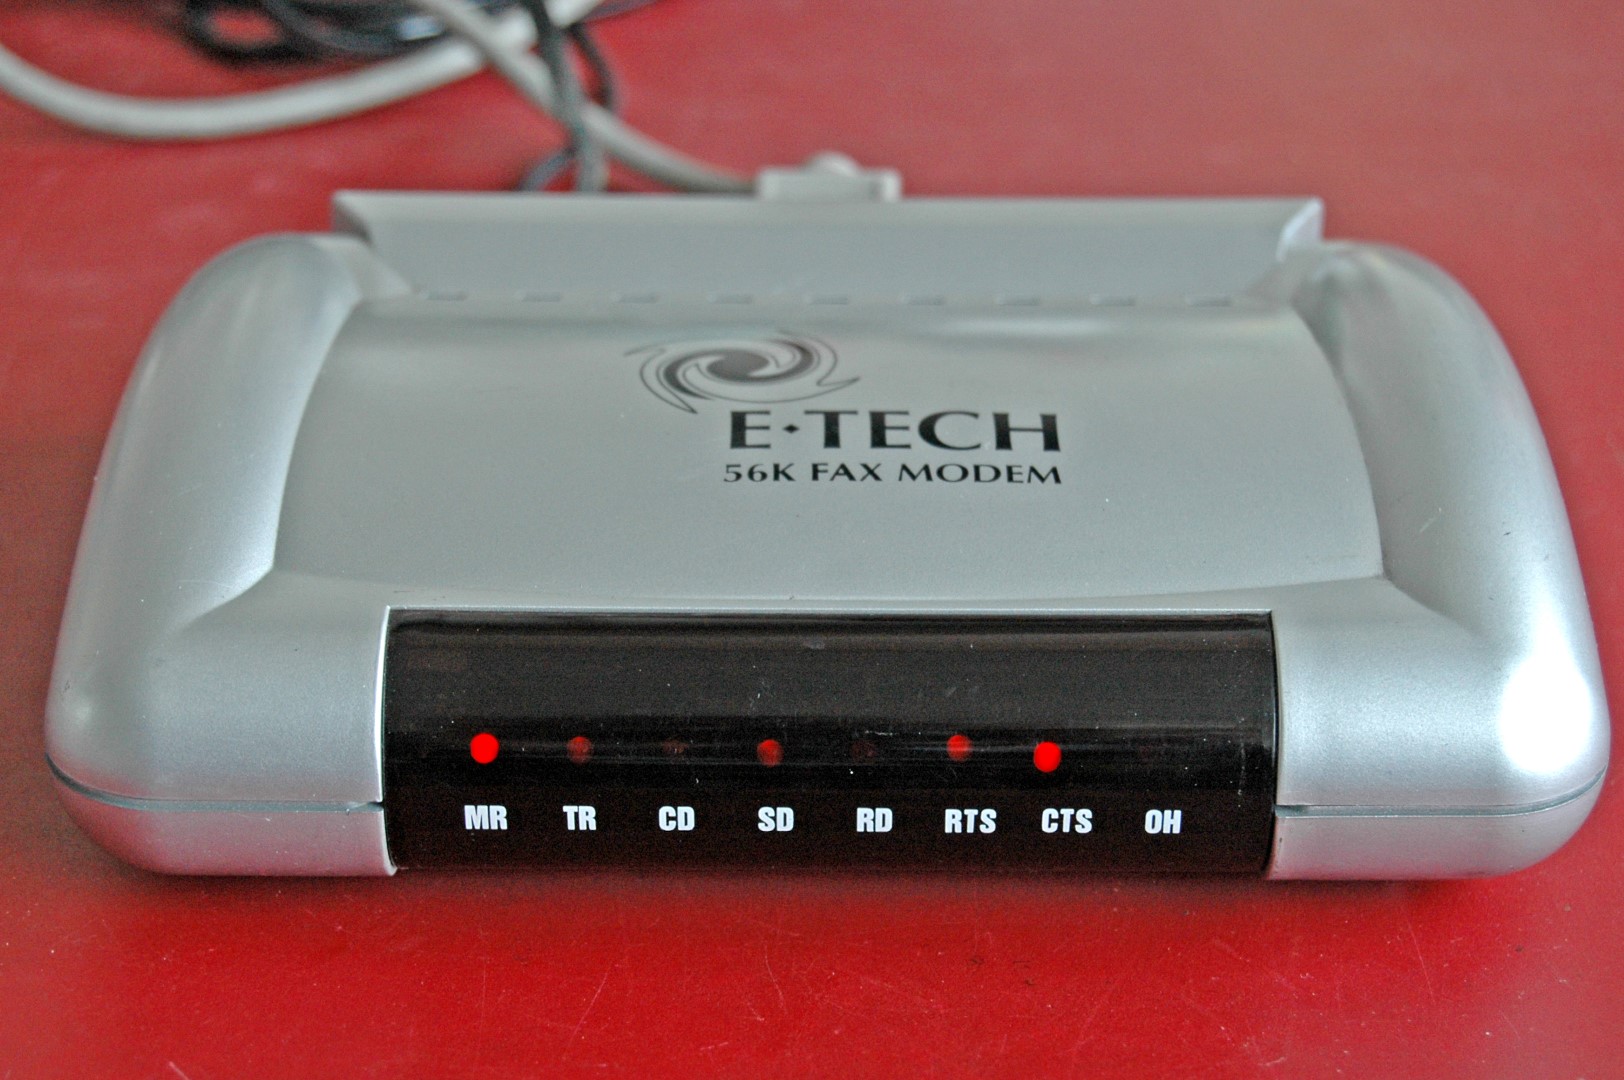 E=tech 56 k Fax modem